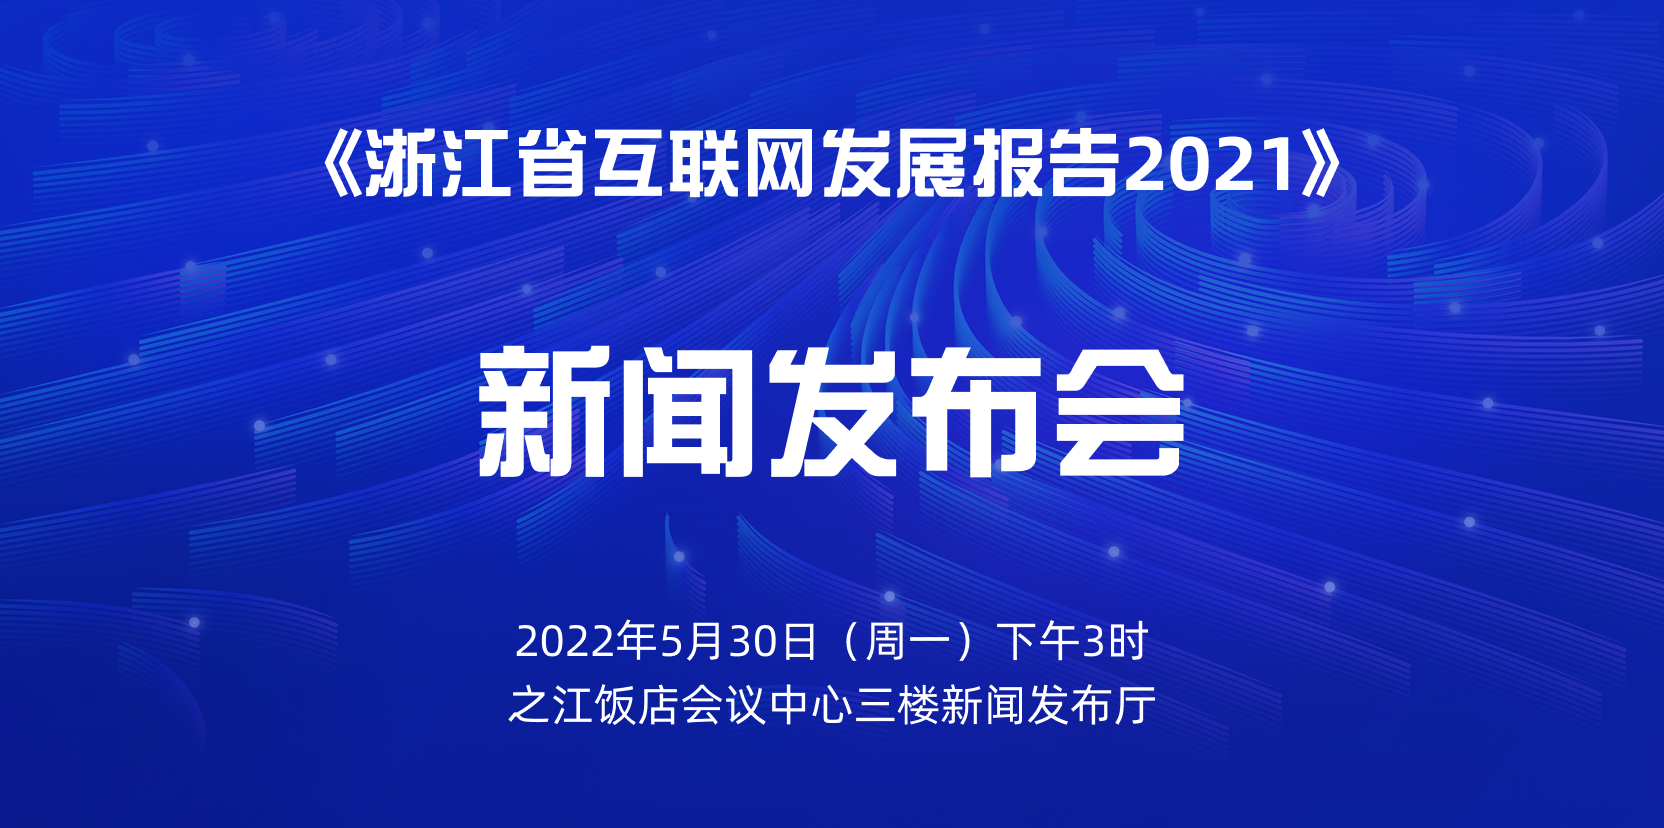 《浙江省互联网发展报告2021》新闻发布会